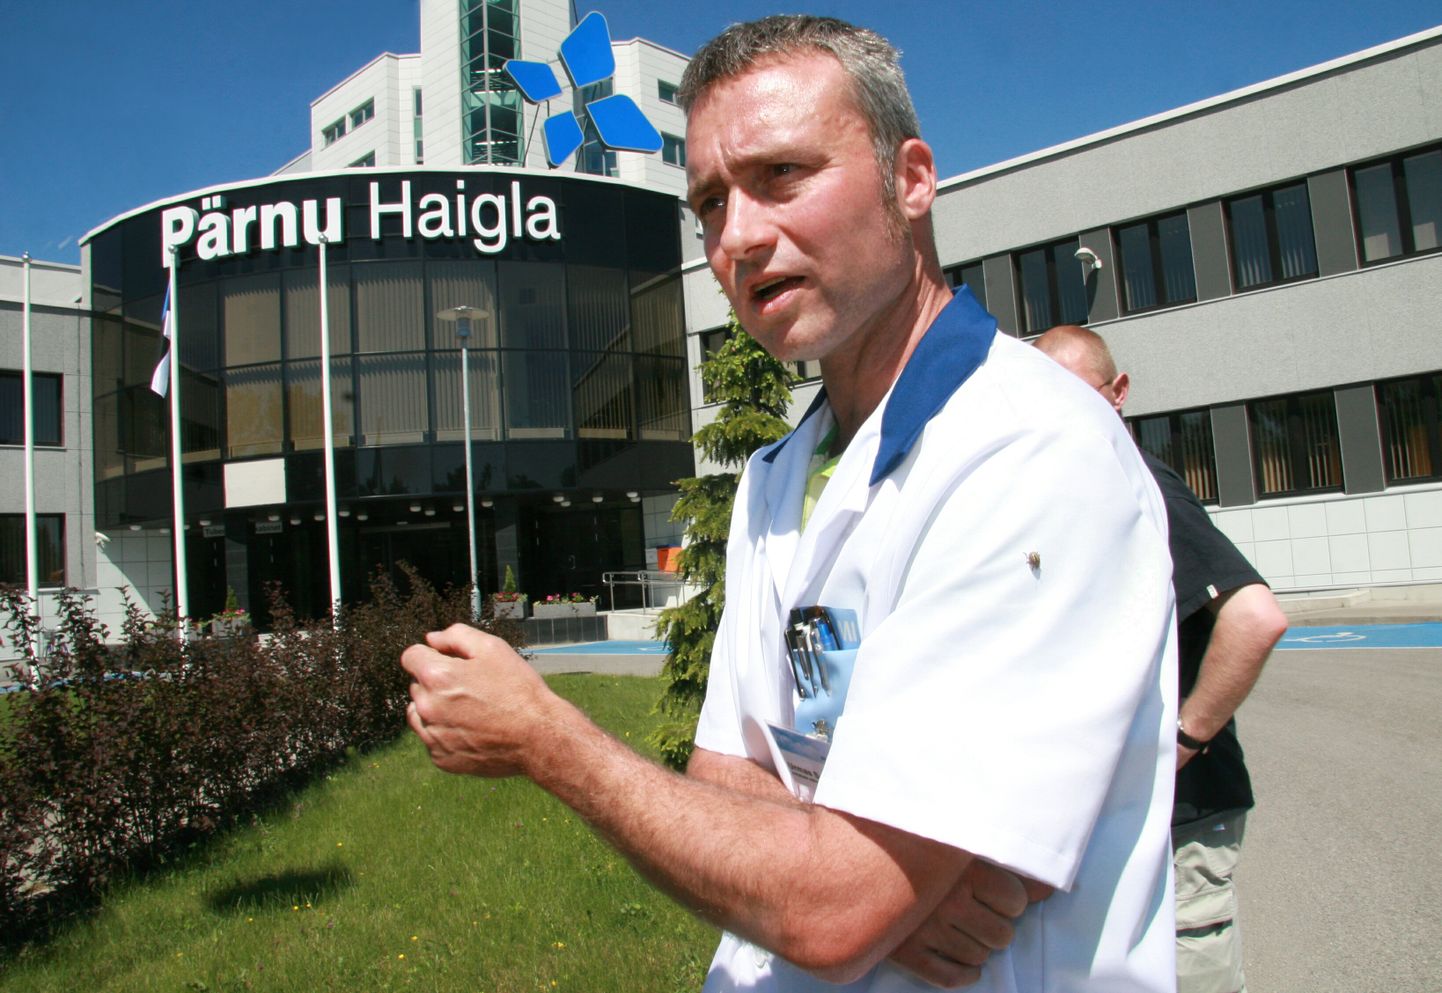 По словам руководителя Пярнуской больницы Урмаса Суле, неразумно, если все больницы Эстонии будут подчиняться одному руководителю.